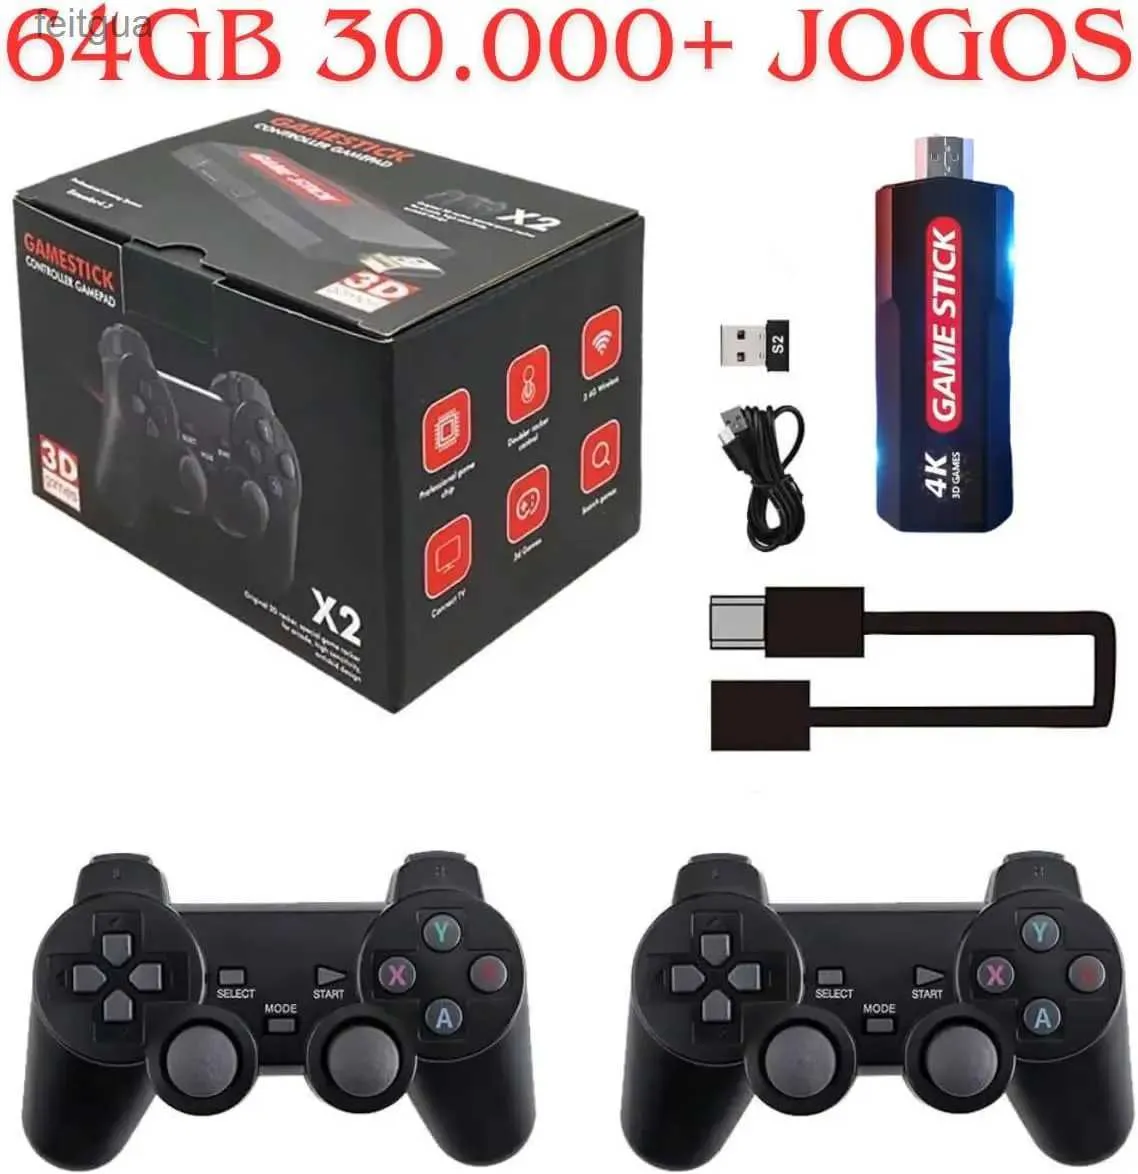 Spelkontroller Joysticks Game Stick 4K X2 64GB 30K+ JOGOS Super Play 1 SP Atari Game Boy E Outros YQ240126